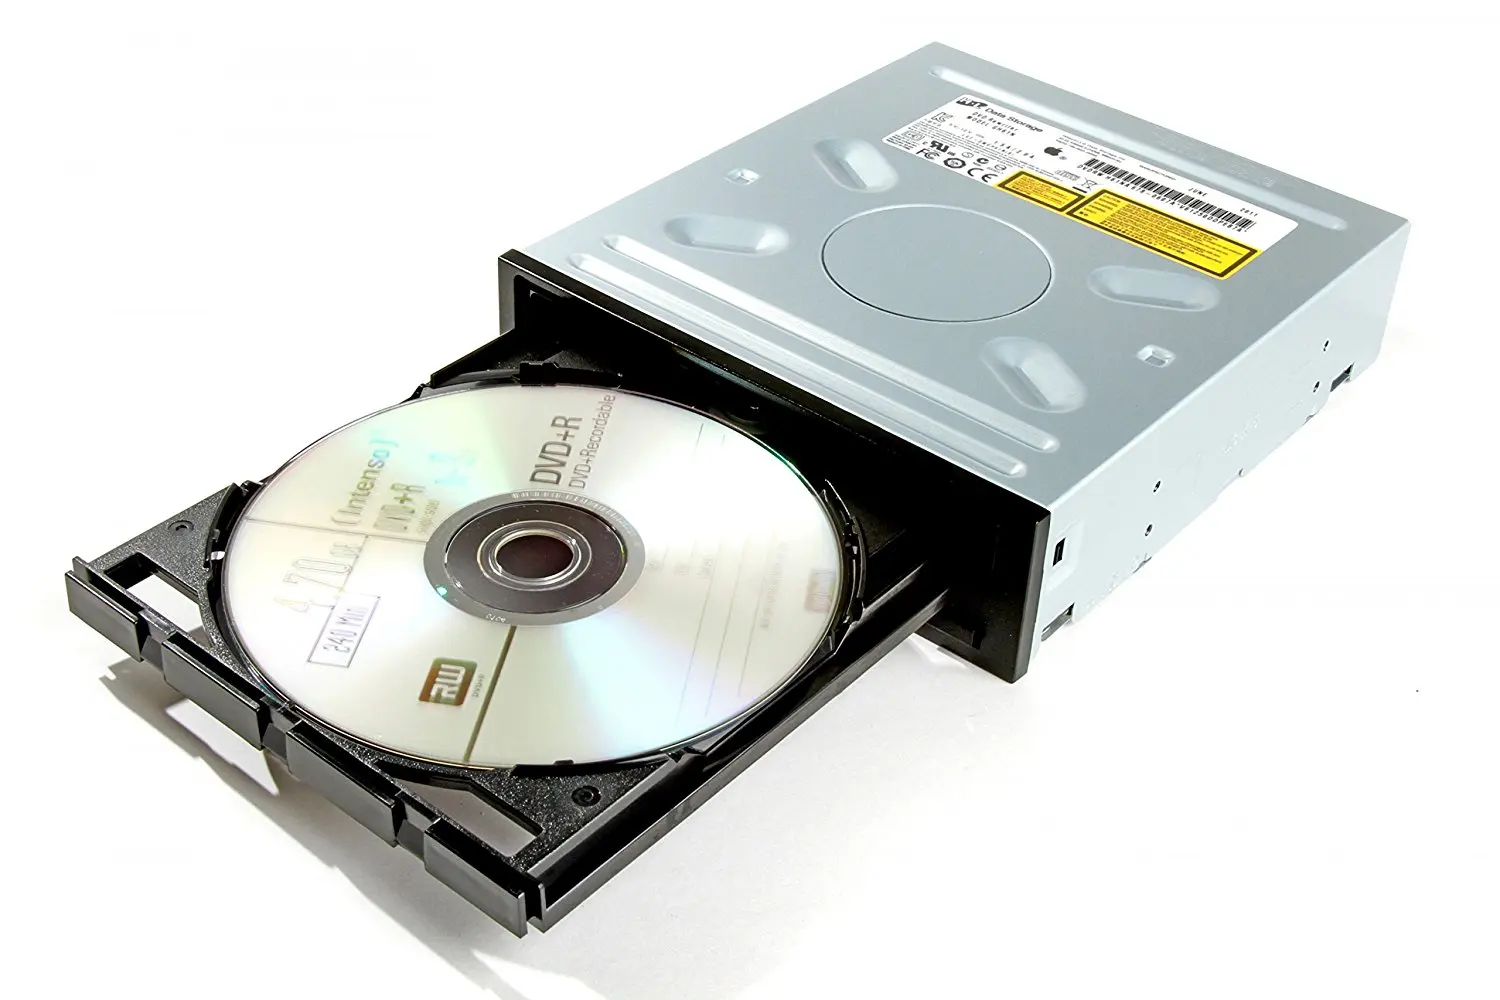 Привод DVD Ram$DVD+R/RW$CDRW. Накопители CD-ROM, CD-RW, DVD. DVD Hitachi-LG Slim Portable. DVD RW дисковод. Что такое дисковод